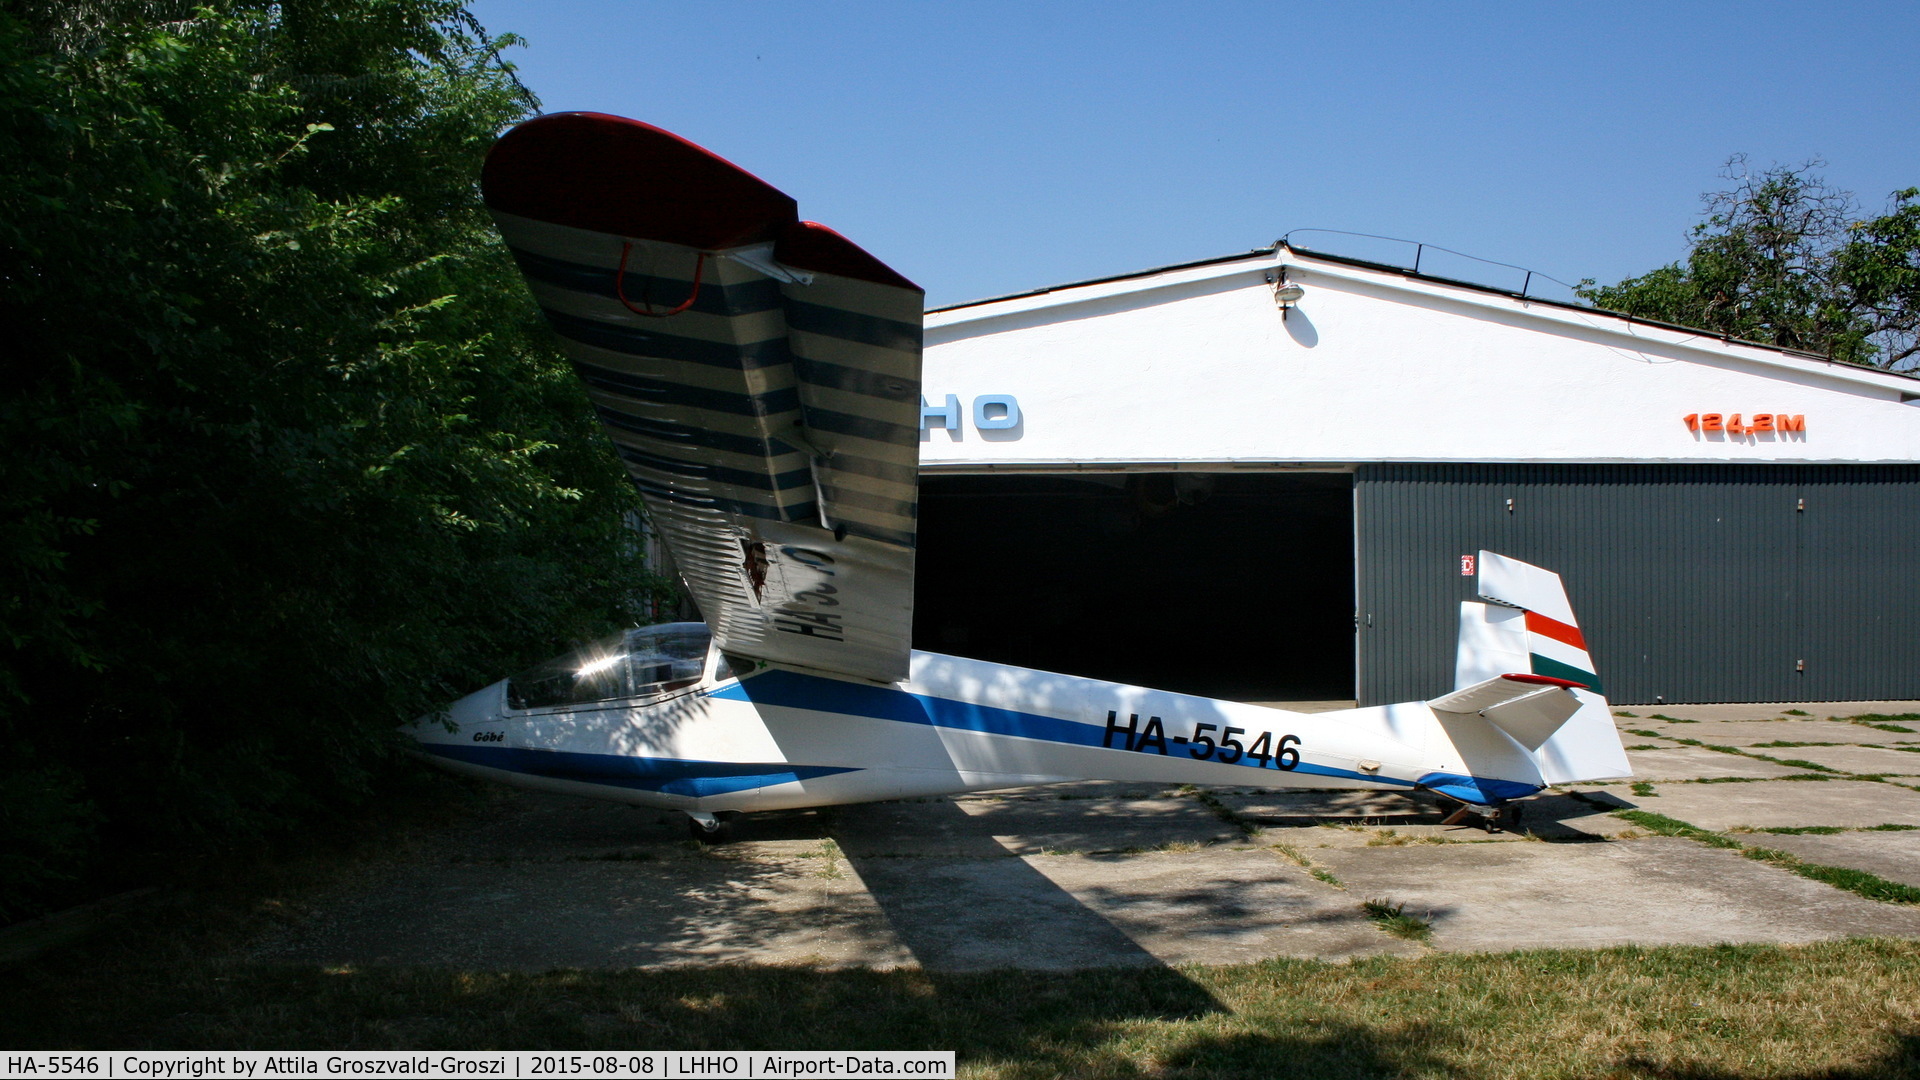 HA-5546, 1988 Rubik R-26SU Góbé 82 C/N AA800062, Hajdúszoboszló Airport, Hungary - 60. Hungary Gliding National Championship and third Civis Thermal Cup, 2015